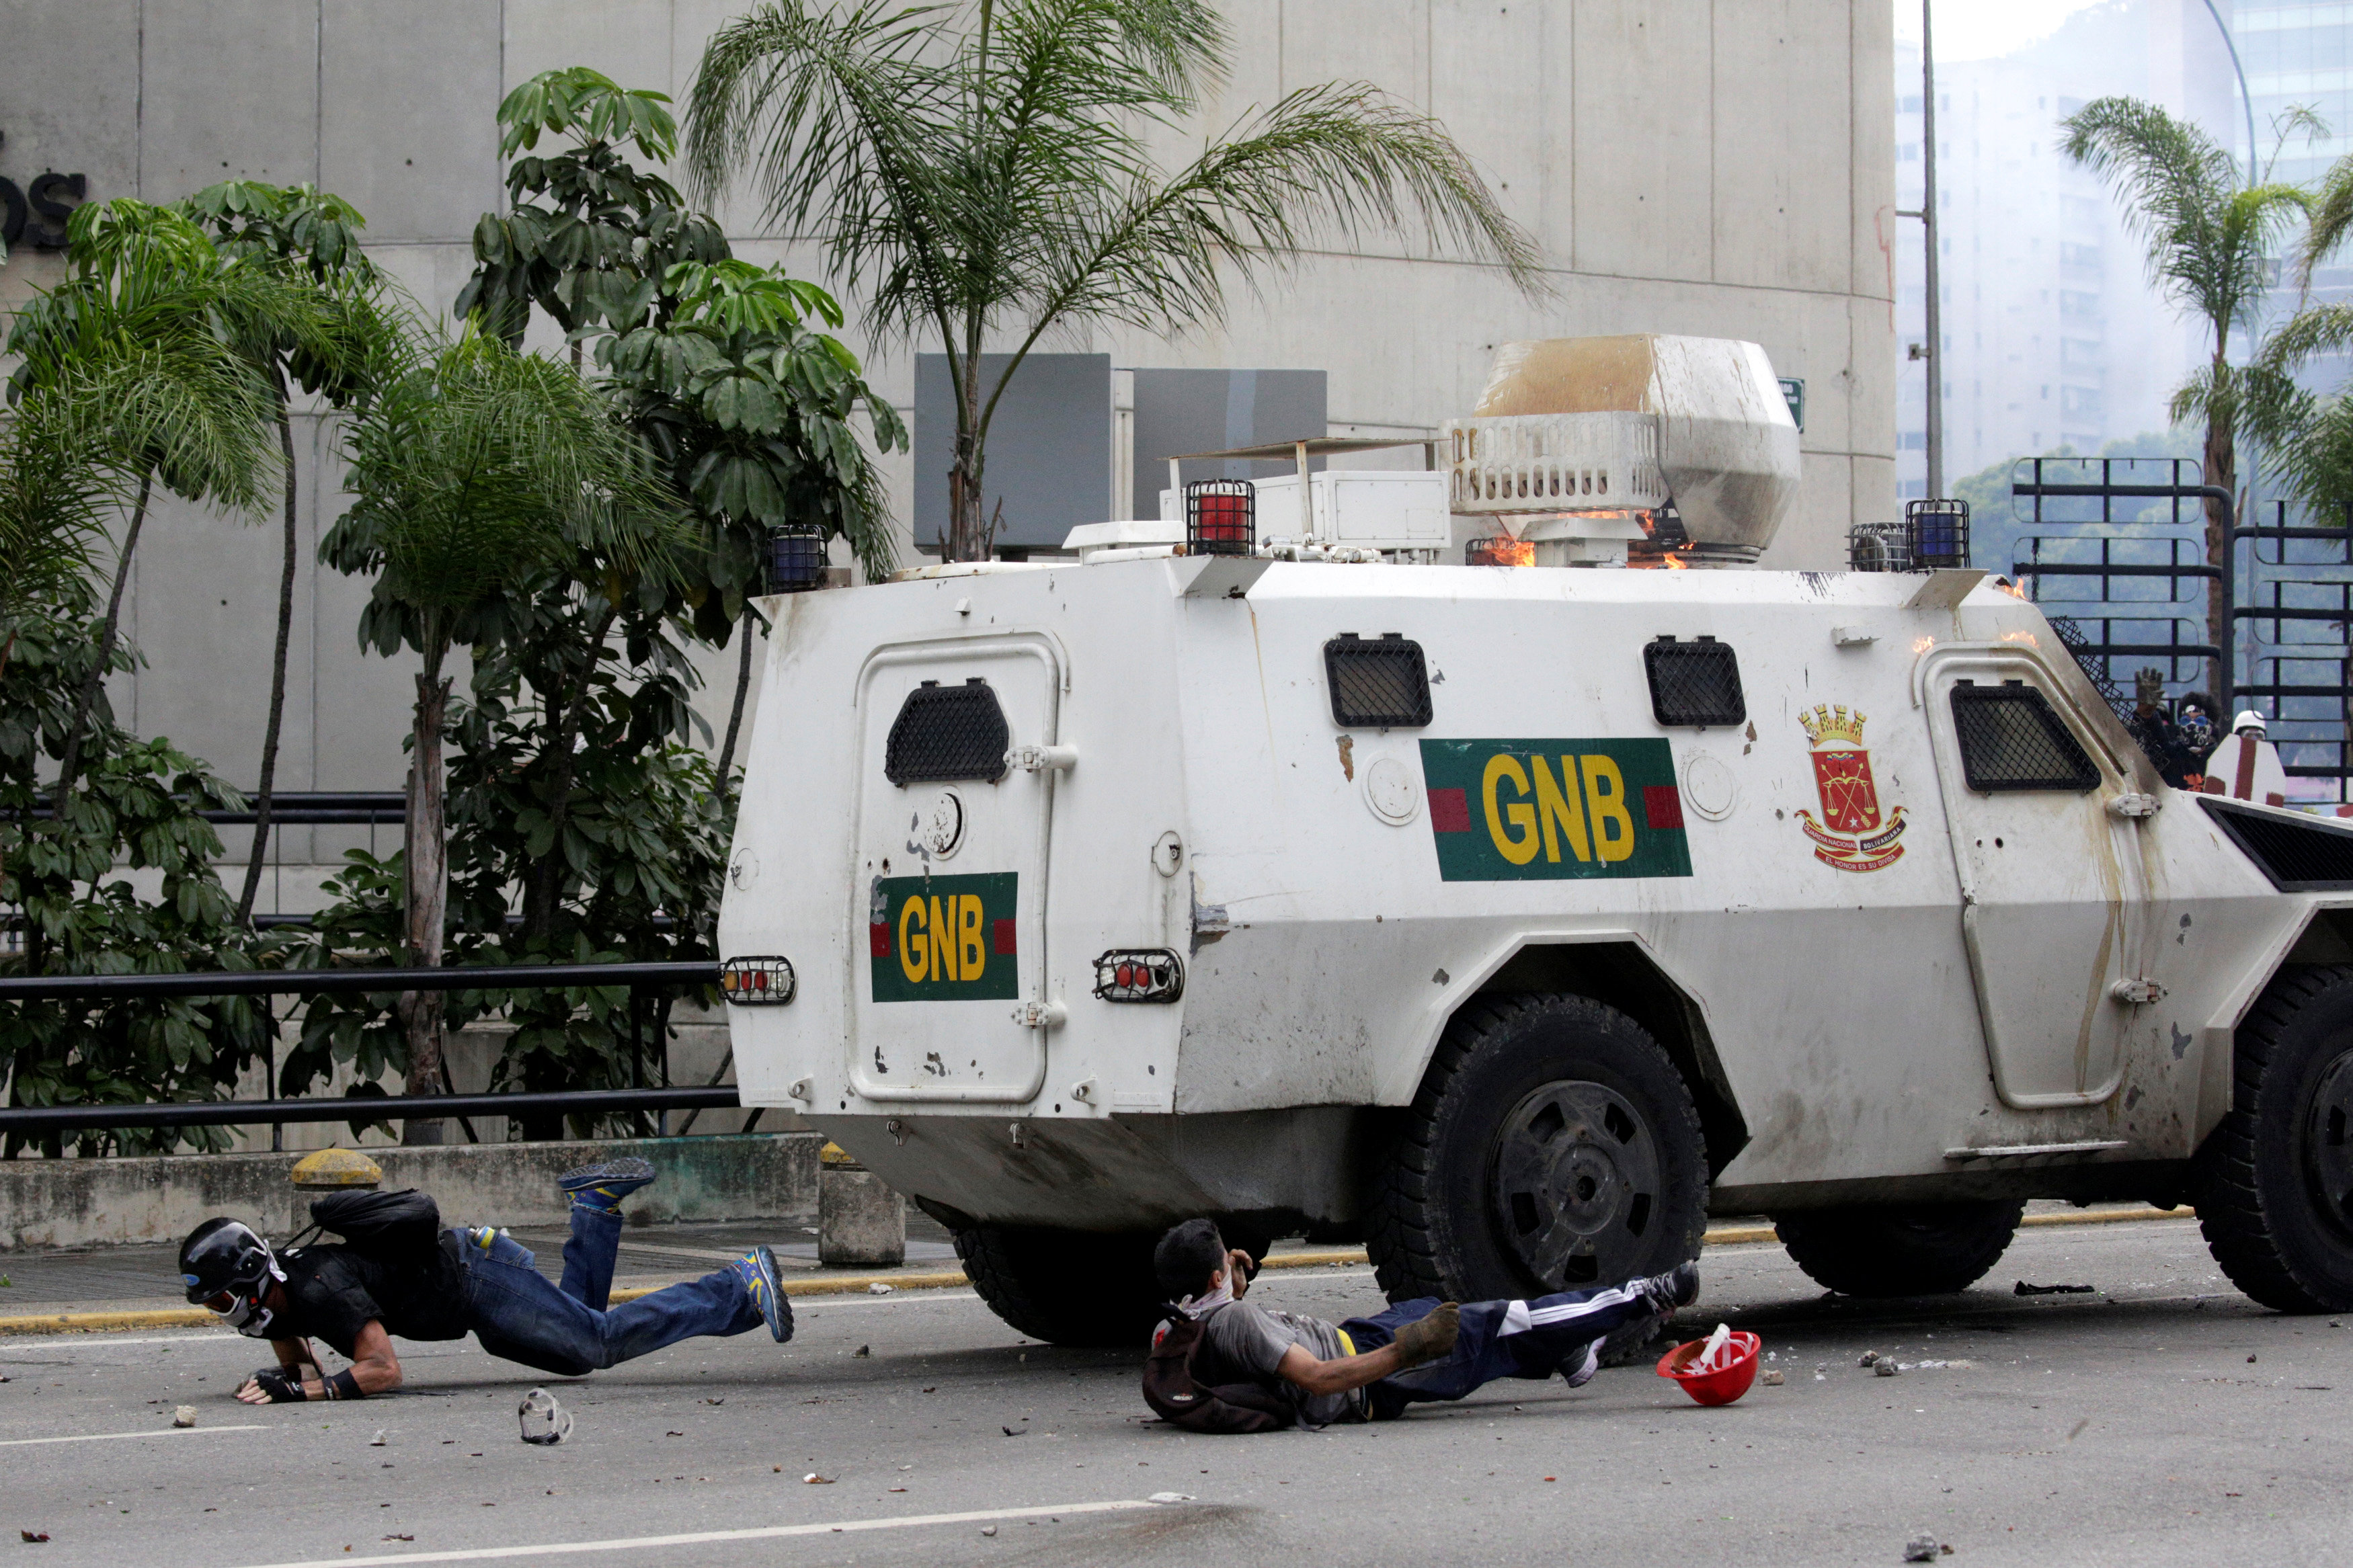 Tanqueta de la GN arrolló de manera ofensiva a manifestante en Altamira. REUTERS/Marco Bello TPX IMAGES OF THE DAY